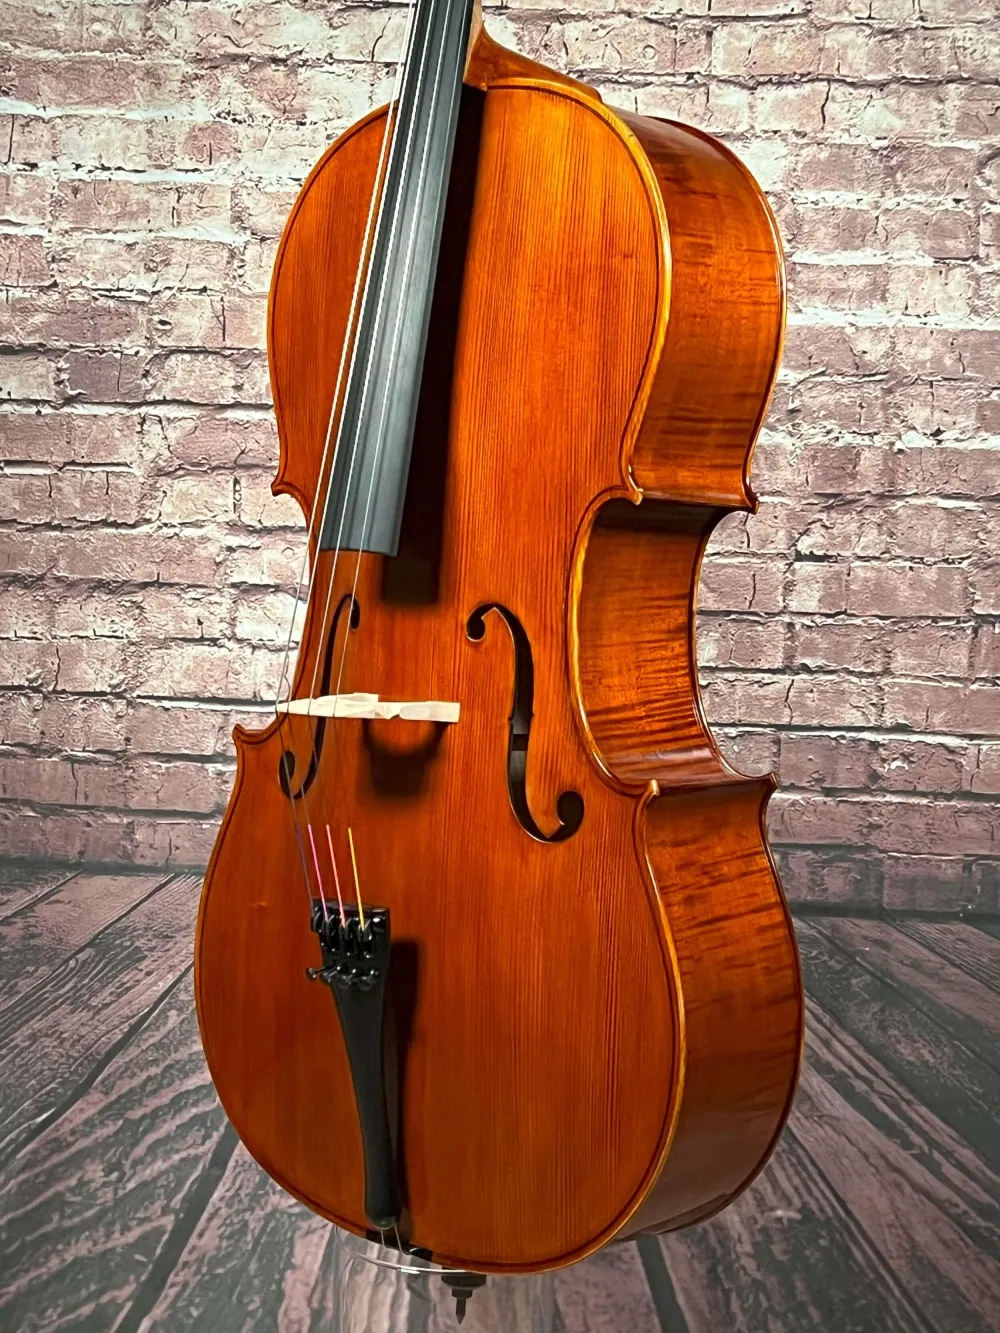 230423 Decke-Zarge-Detailansicht eines Stoica Alin di Bottega Cello Handarbeit aus Siebenbürgen 2023